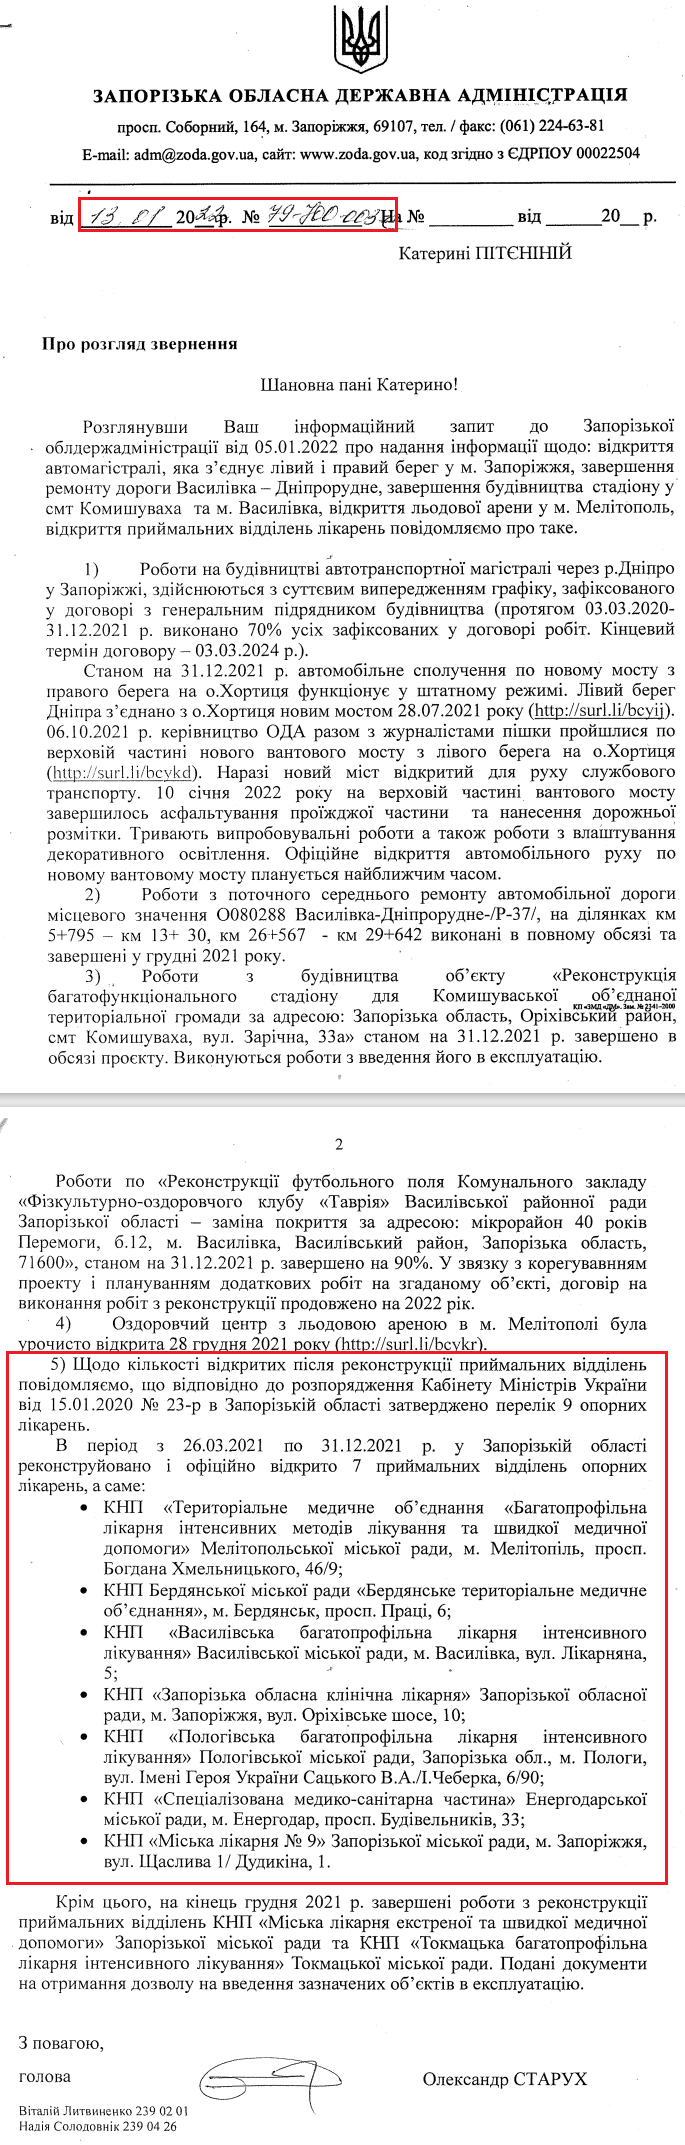 Лист Запорізької обласної державної адміністрації від 13 січня 2022 р.